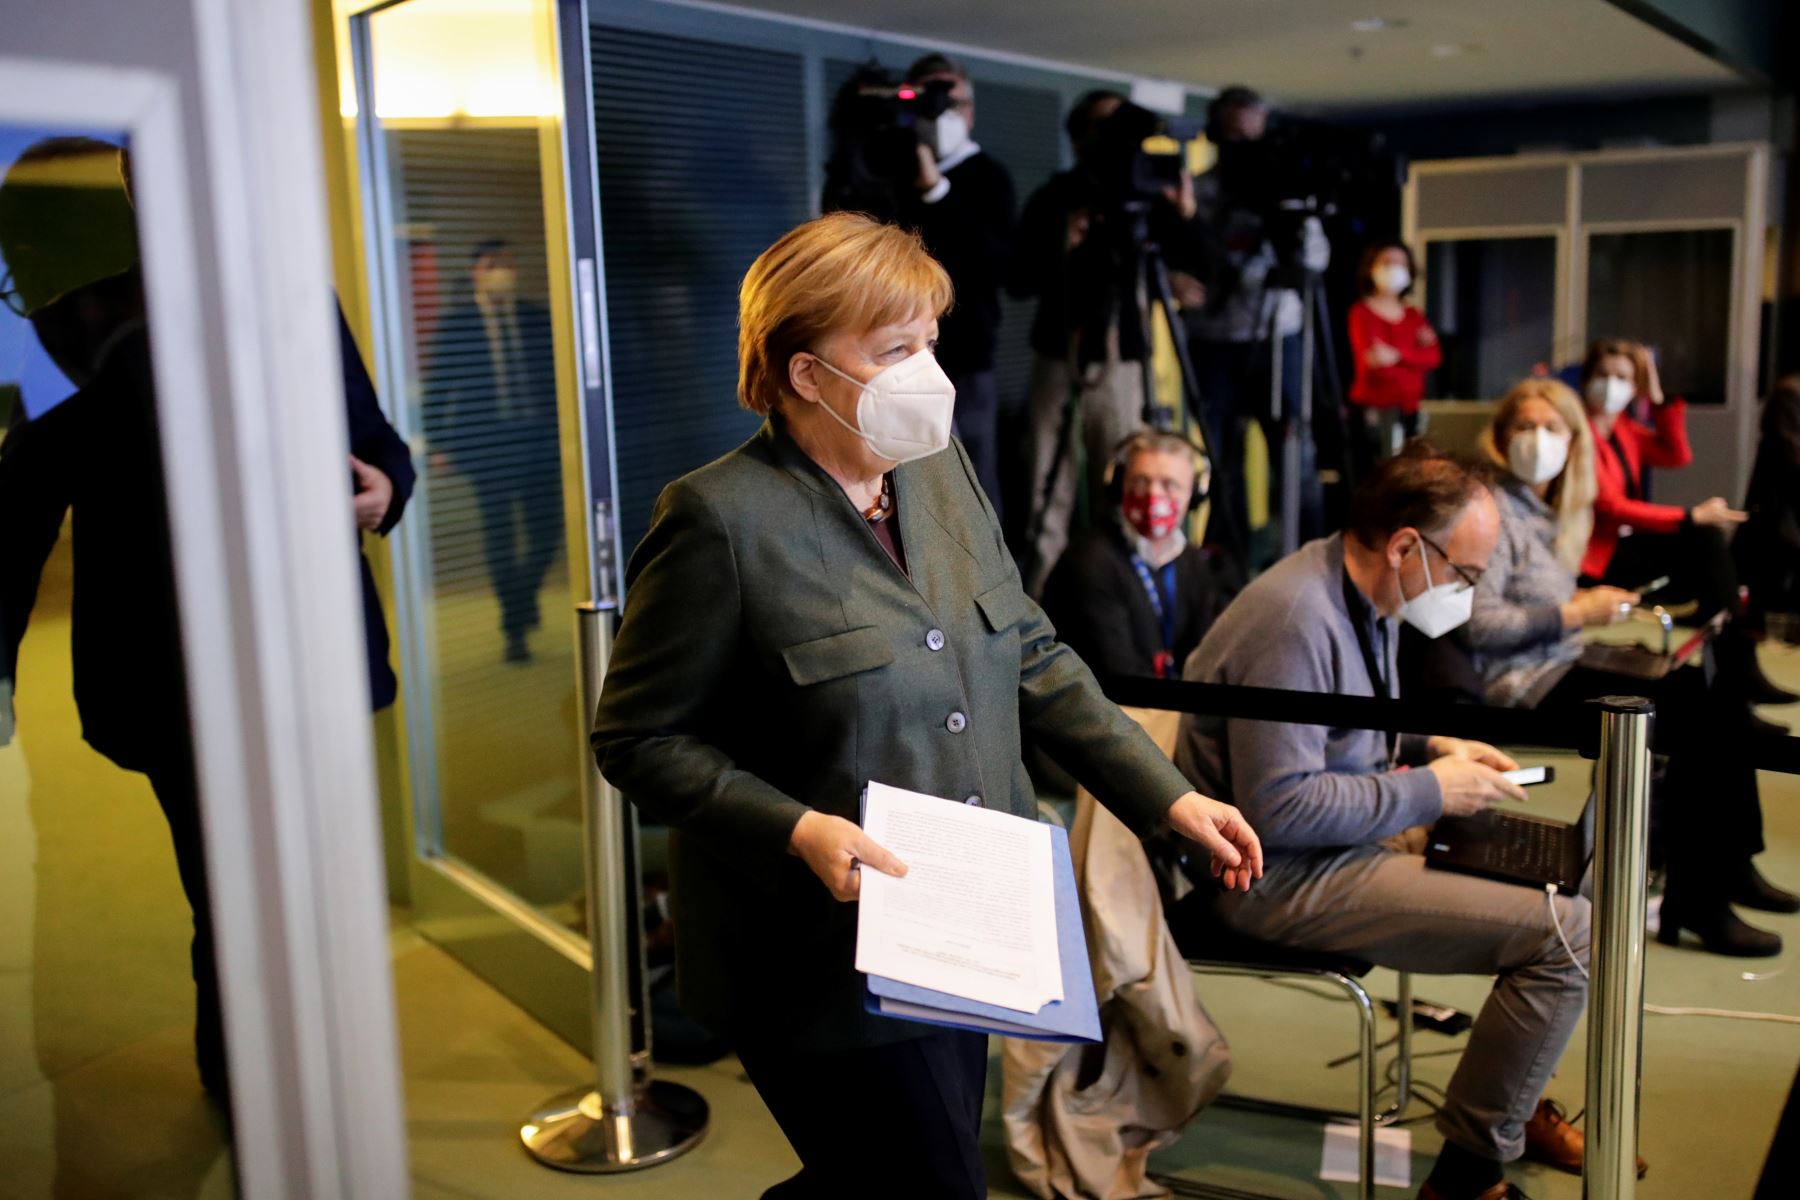 La canciller alemana, Angela Merkel, llega para pronunciar una conferencia de prensa tras las conversaciones por videoconferencia con los primeros ministros de estado de Alemania sobre la extensión del bloqueo actual debido a la pandemia del coronavirus COVID-19, en la Cancillería de Berlín. Foto: AFP